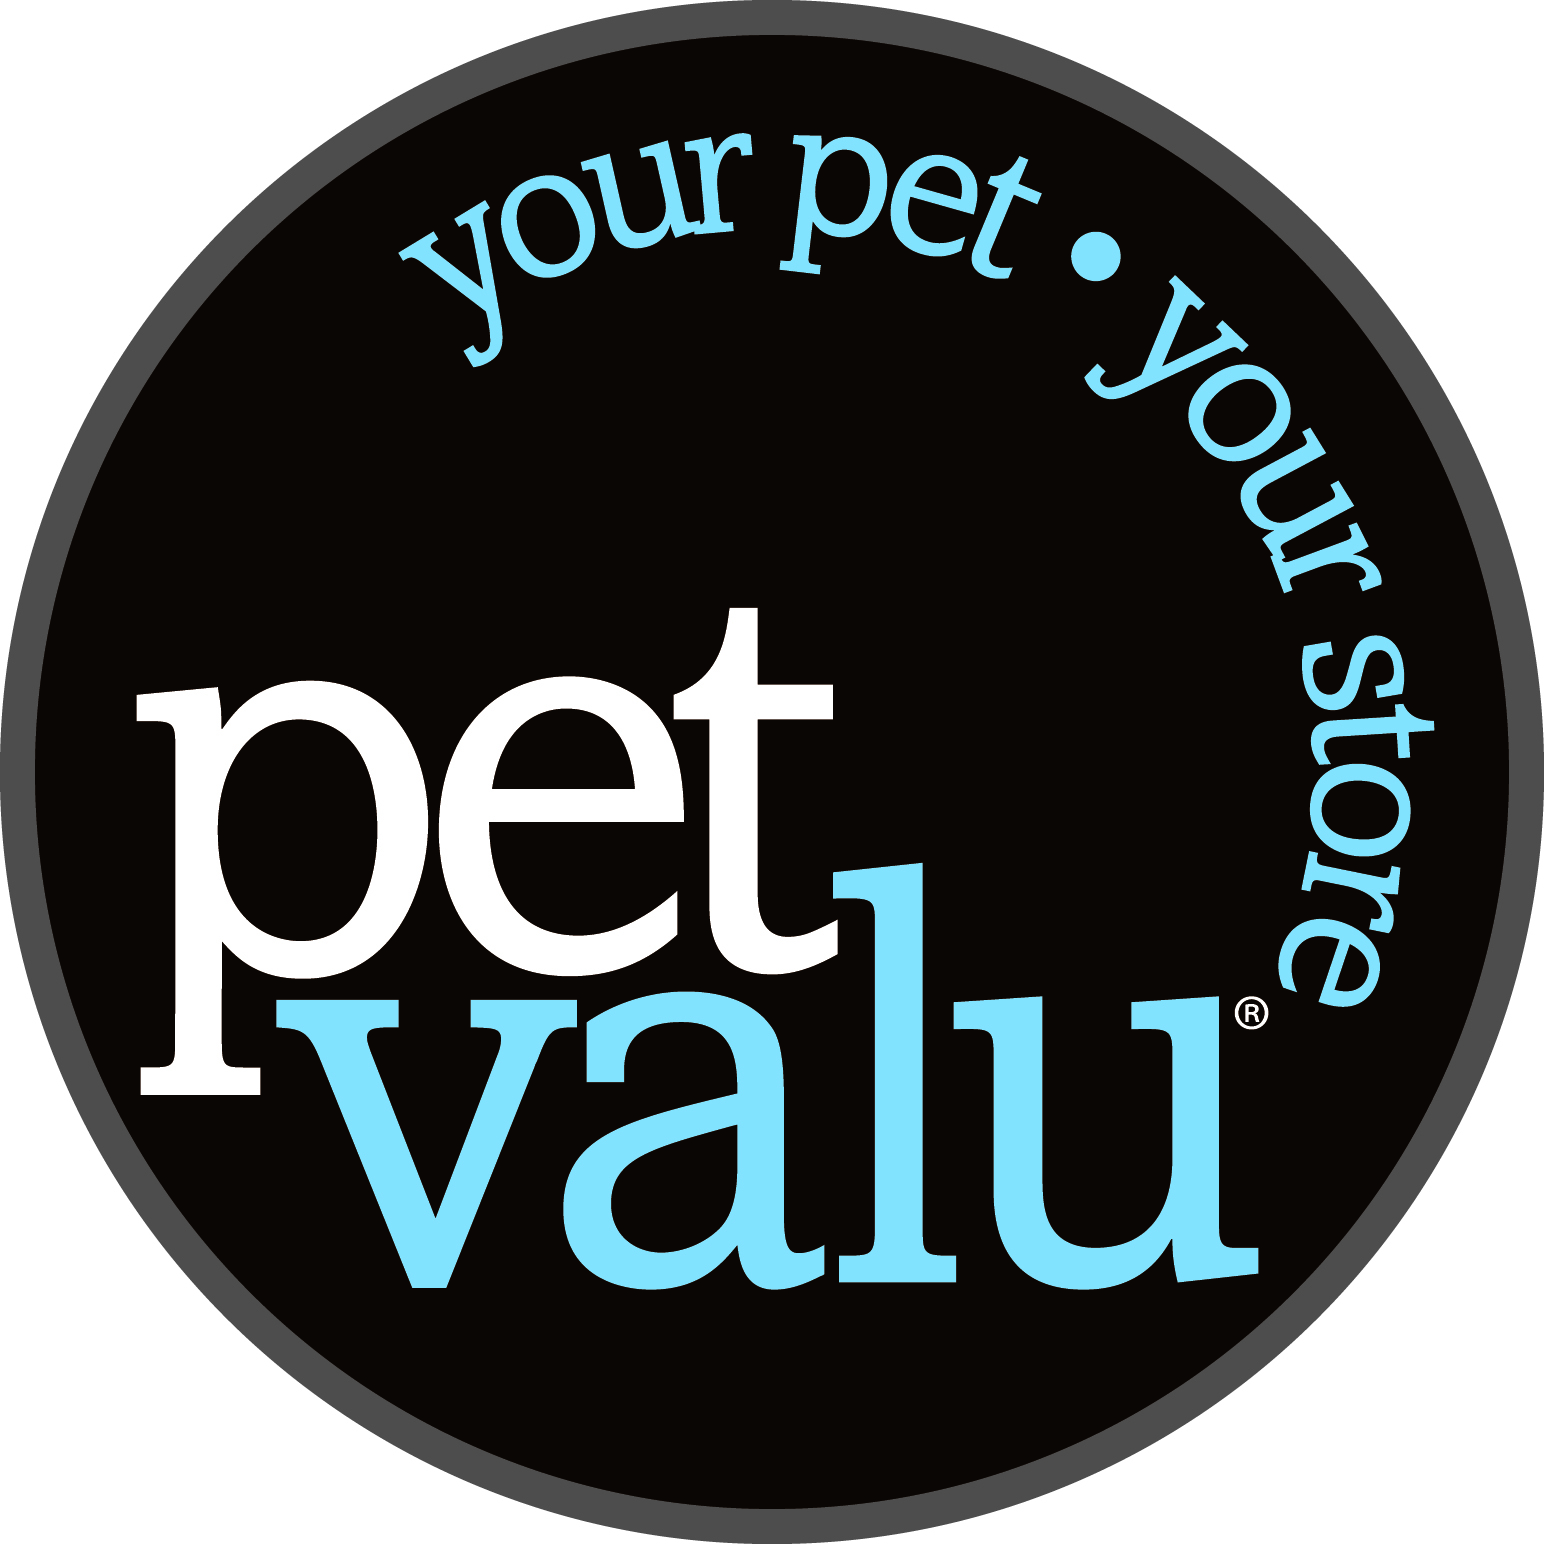 Pet Valu_CIrcle logo.jpg